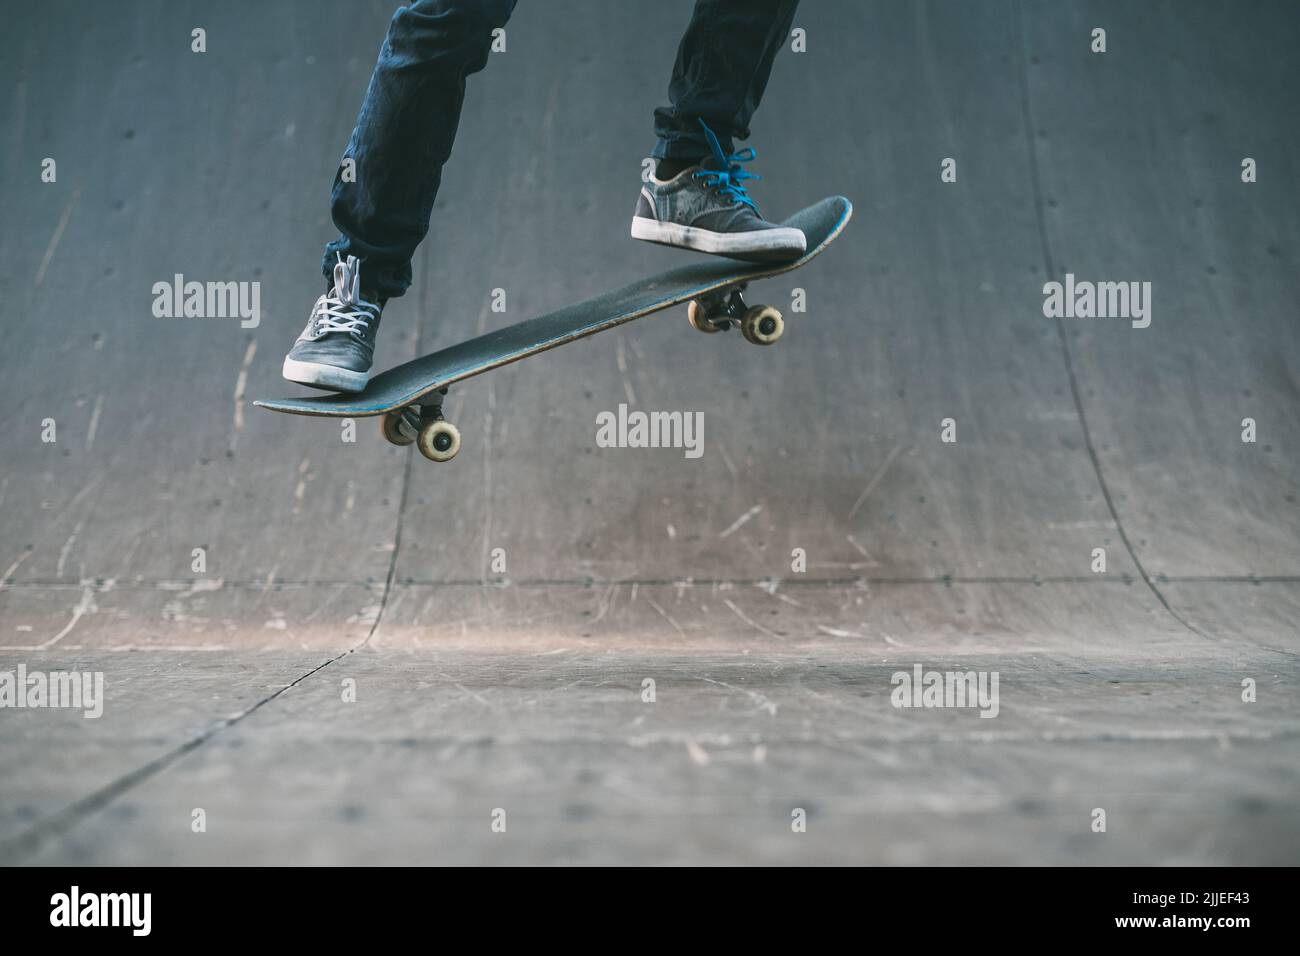 skateboarder action extrême style de vie ollie trick Banque D'Images